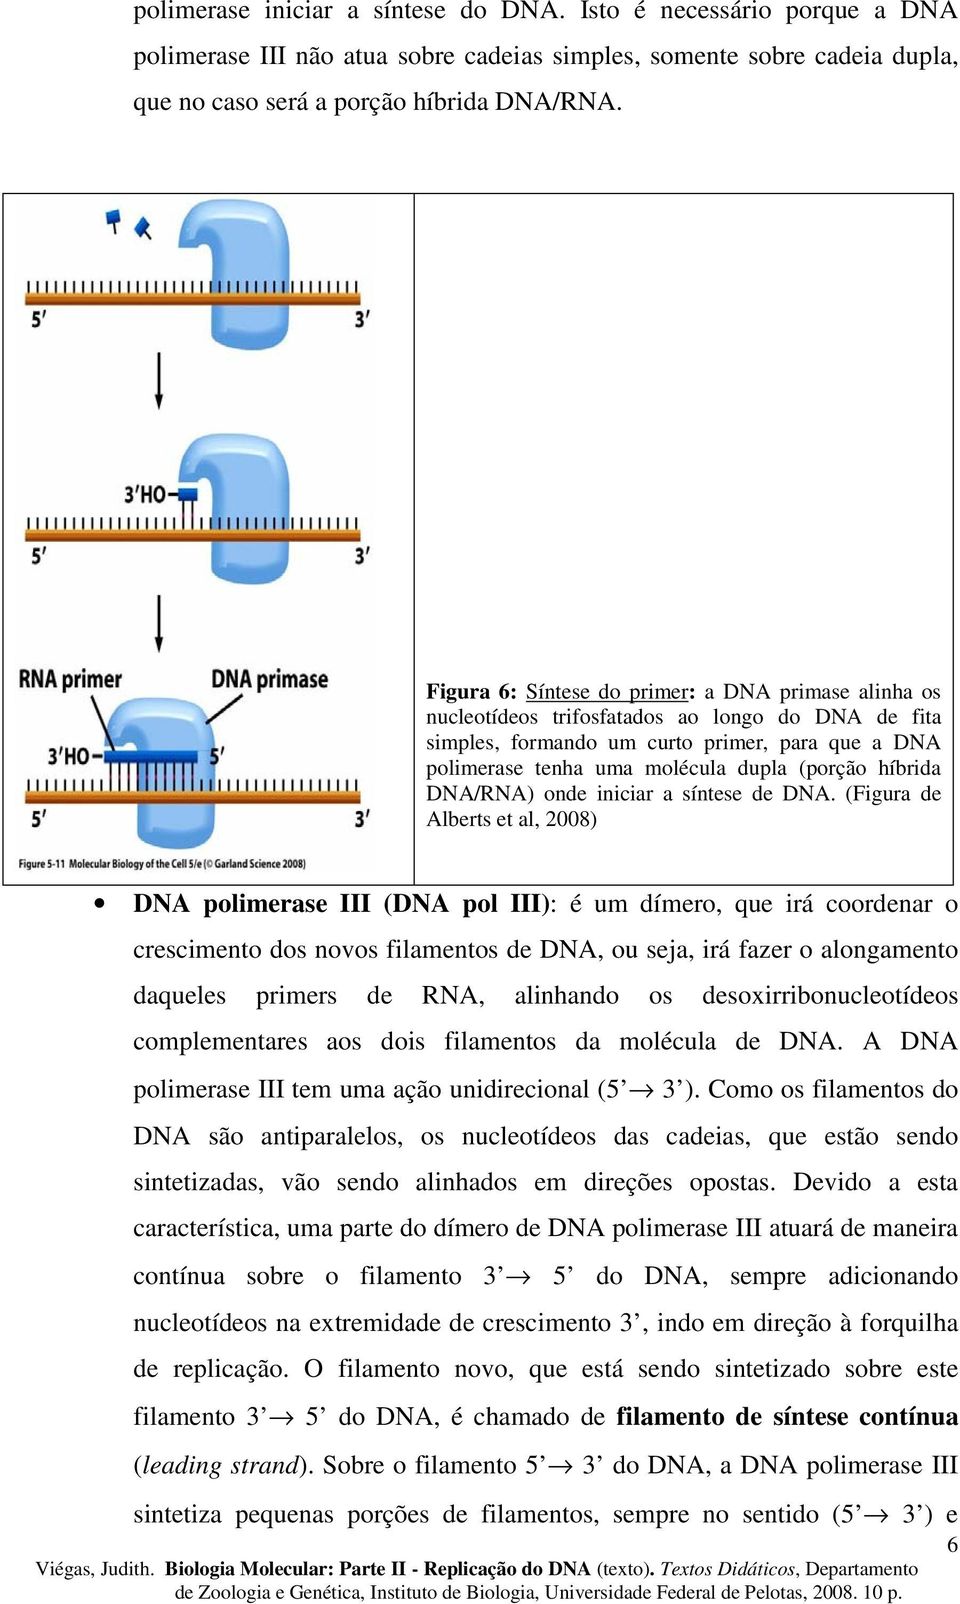 híbrida DNA/RNA) onde iniciar a síntese de DNA.